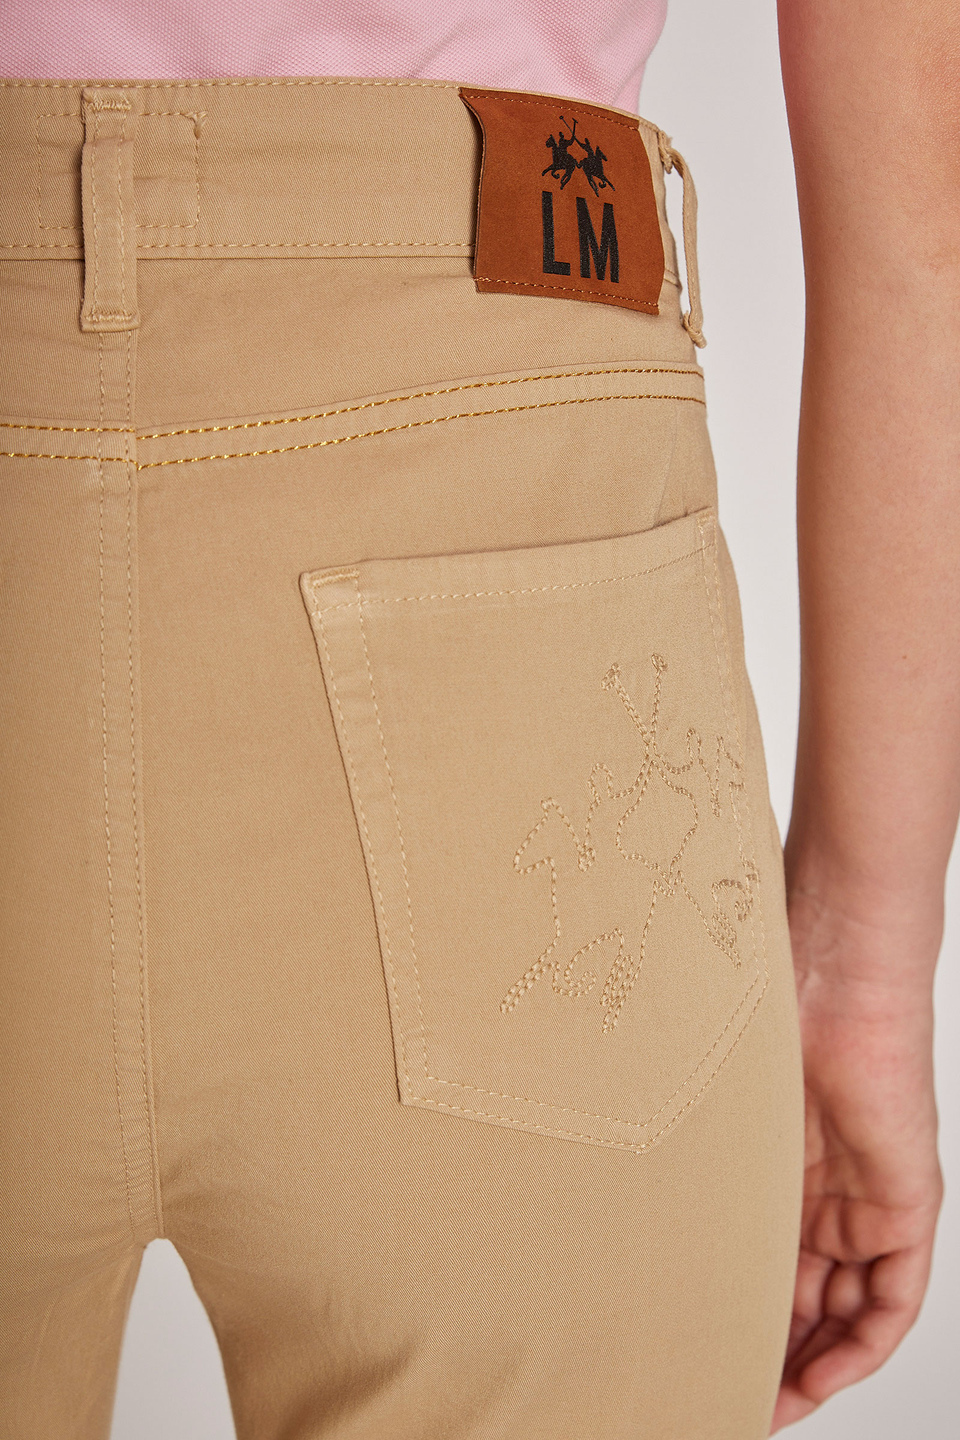 Pantalone da donna cinque tasche in cotone elasticizzato regular fit | La Martina - Official Online Shop